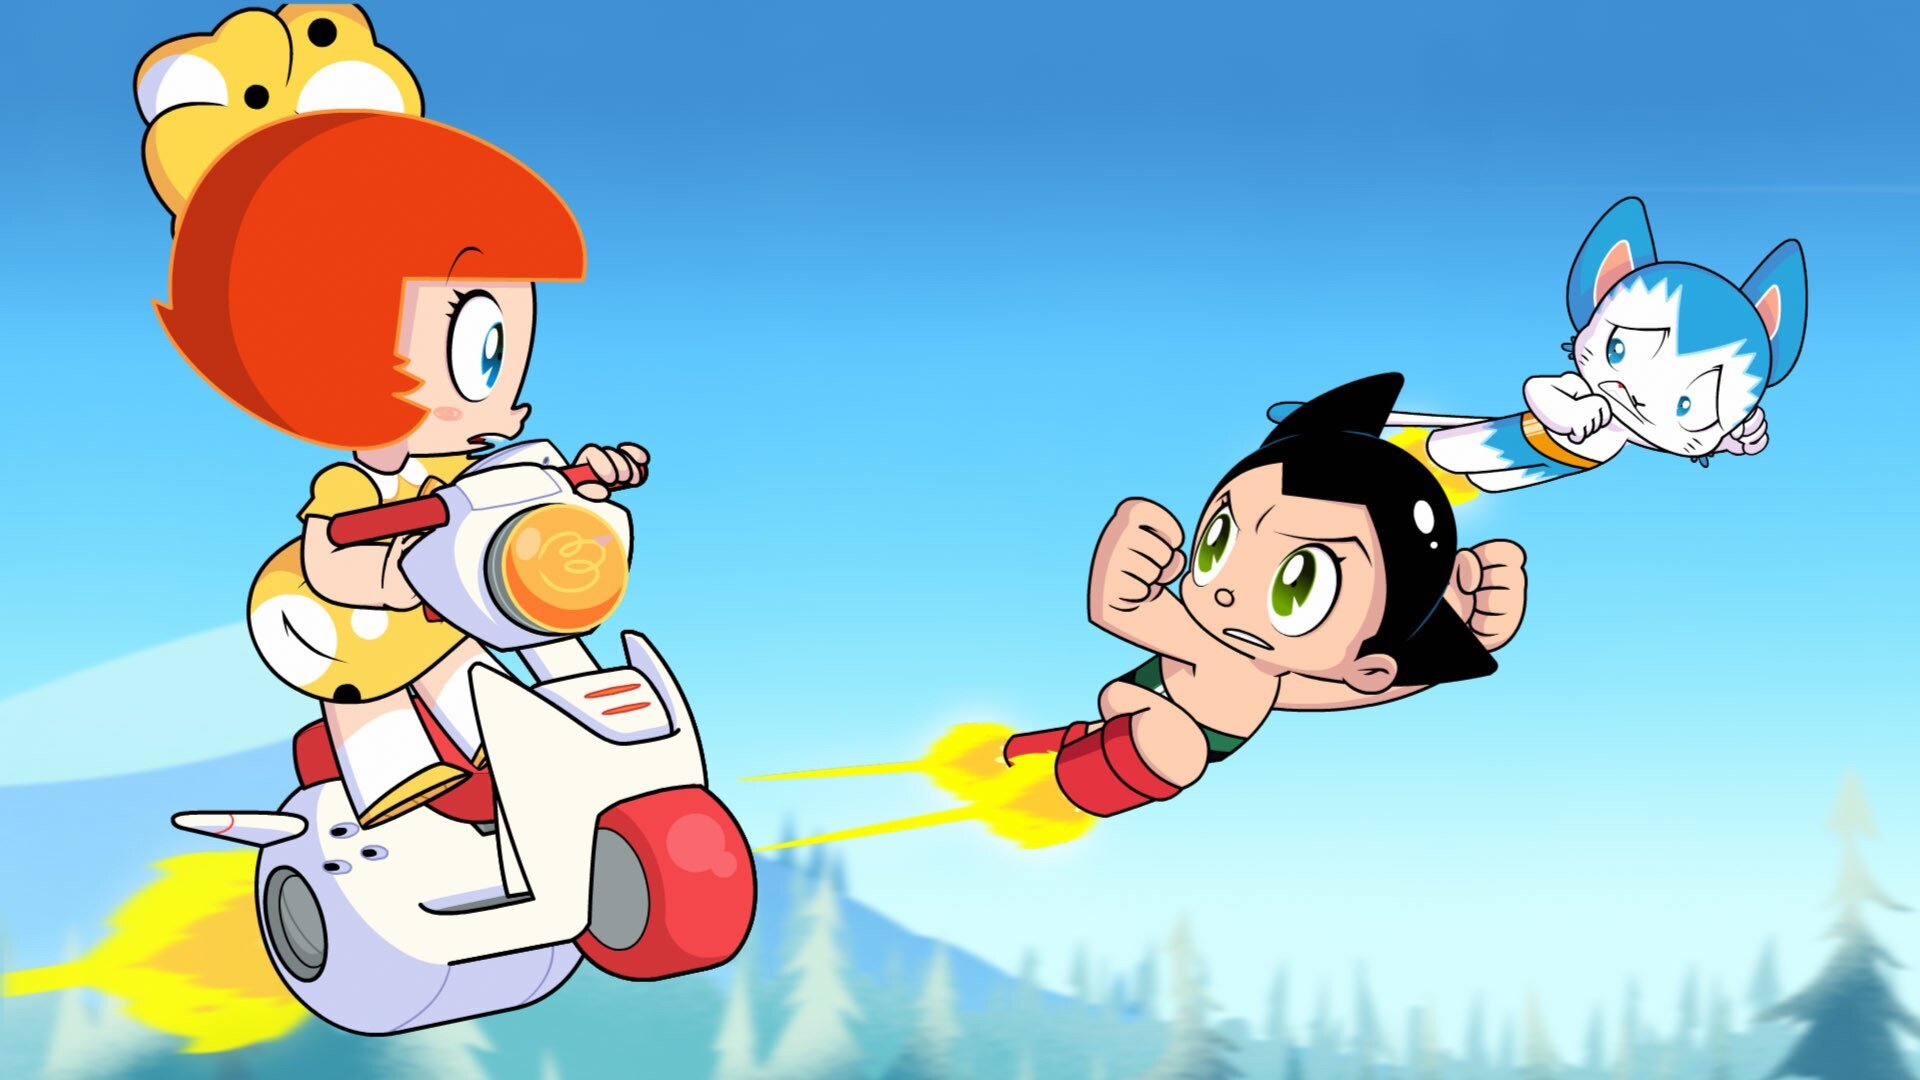 Watch Go Astro Boy Go Season 1 Episode 51 Online Stream Full Episodes